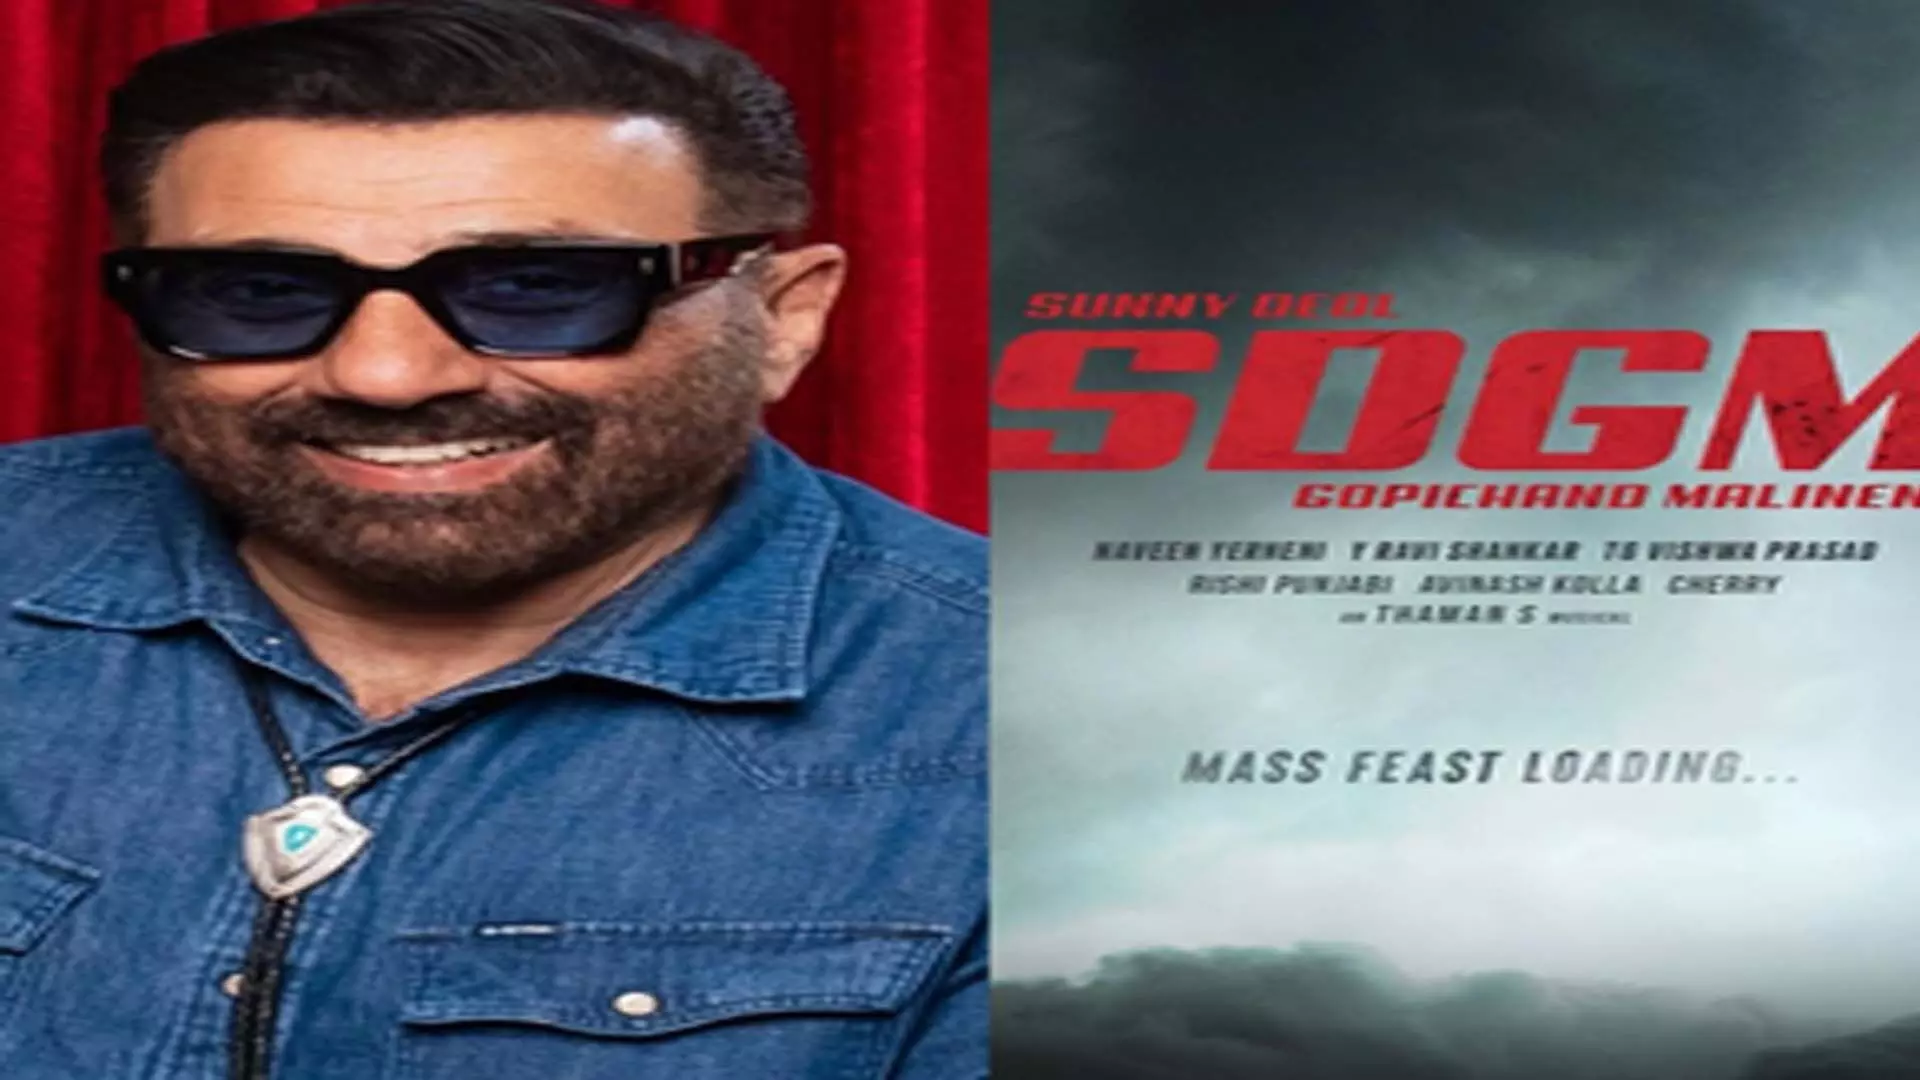 Mumbai : सनी देओल गोपीचंद मालिनेनी की ‘सबसे बड़ी एक्शन फिल्म’ में शामिल